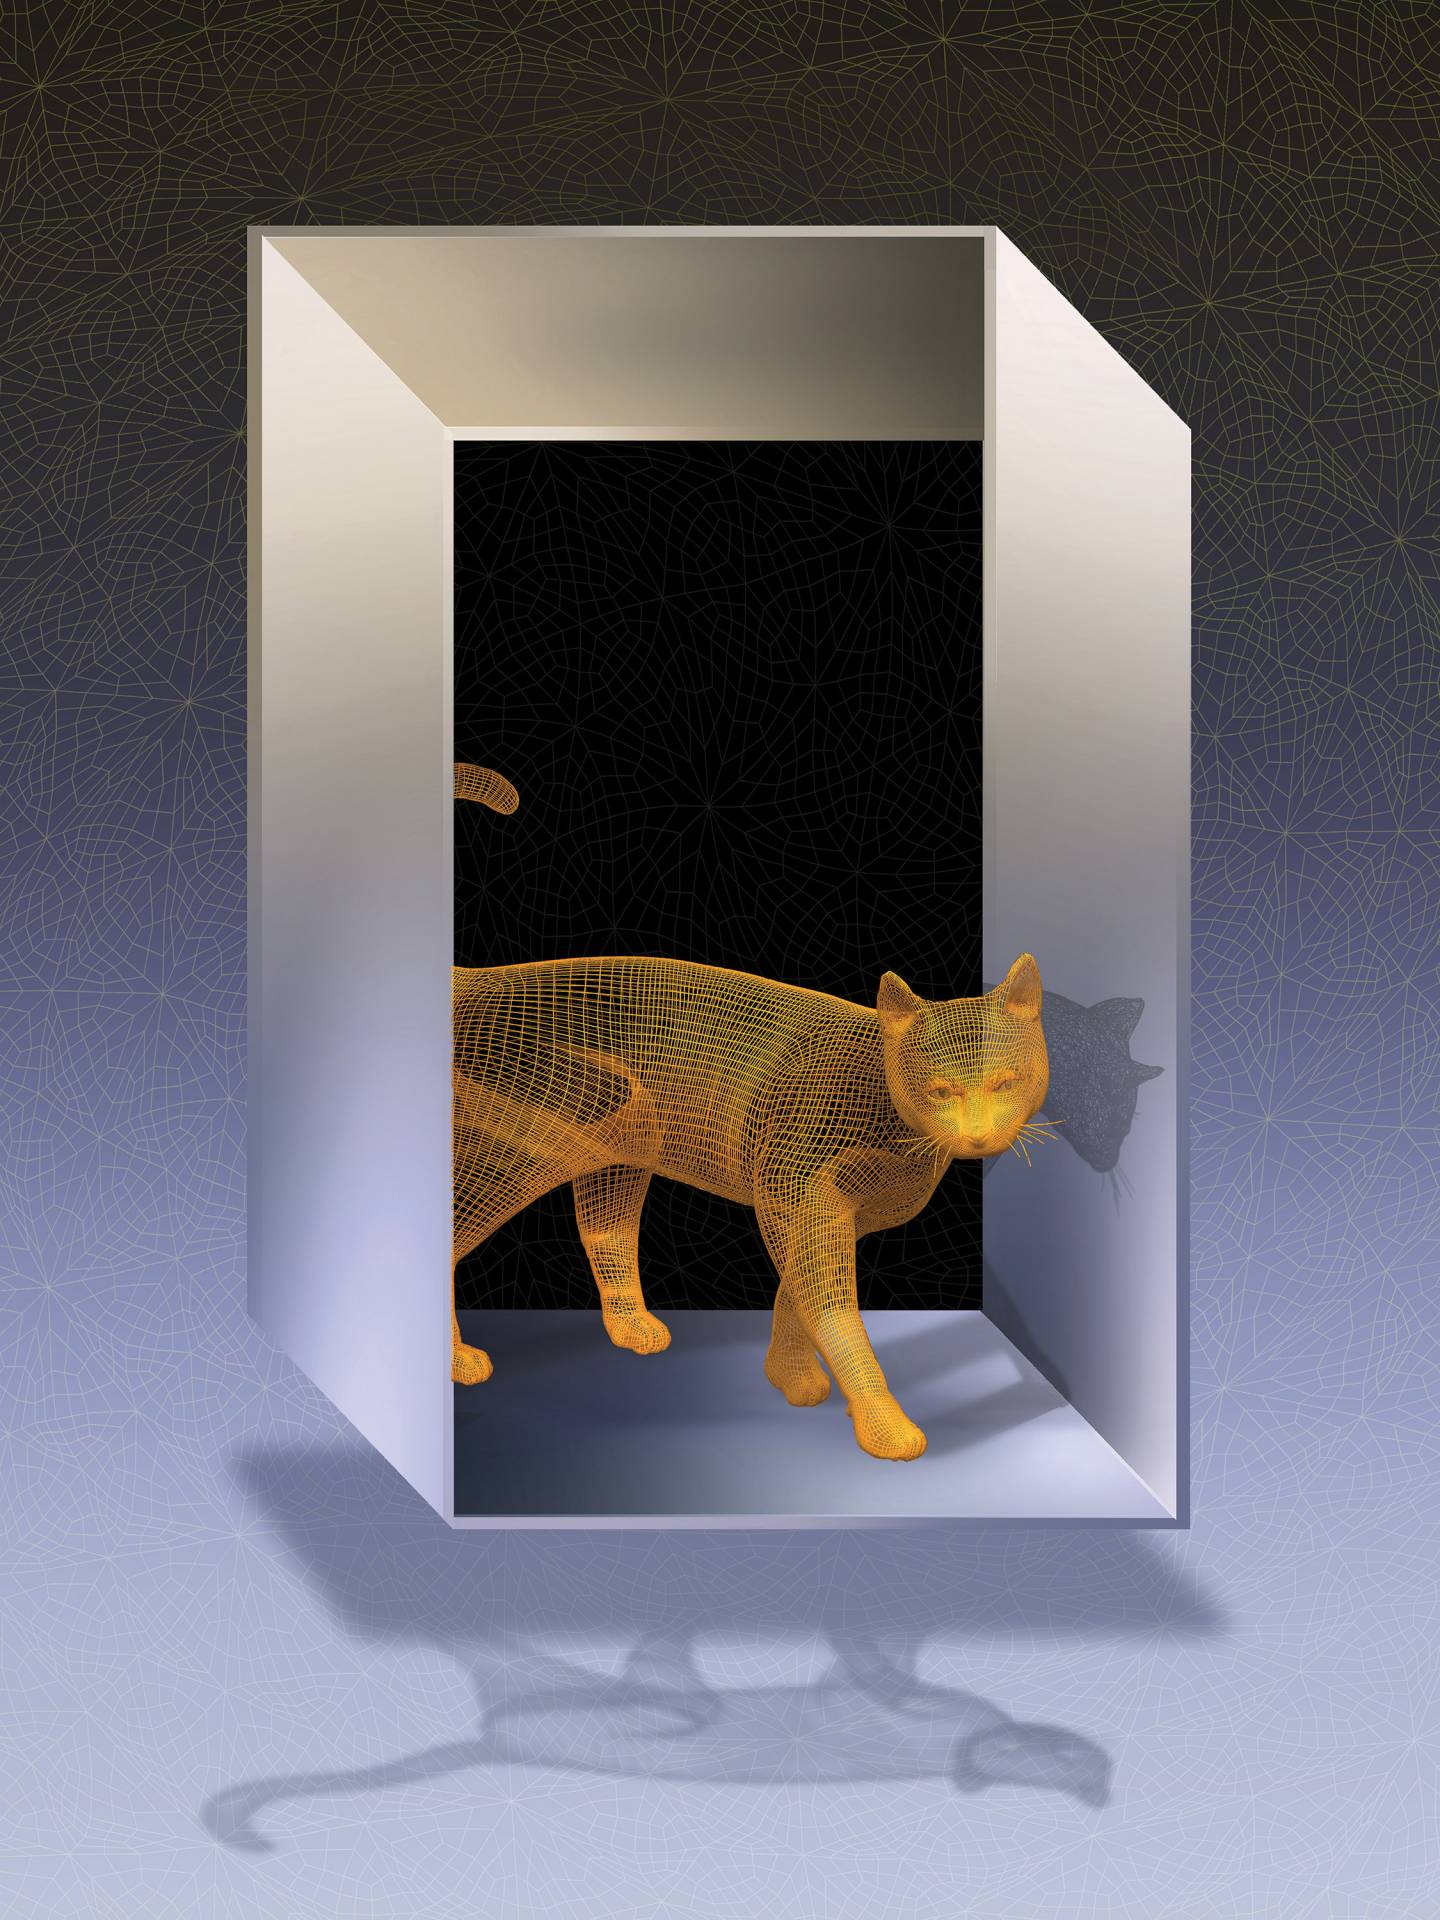 Schodinger's cat walks through an impossible door